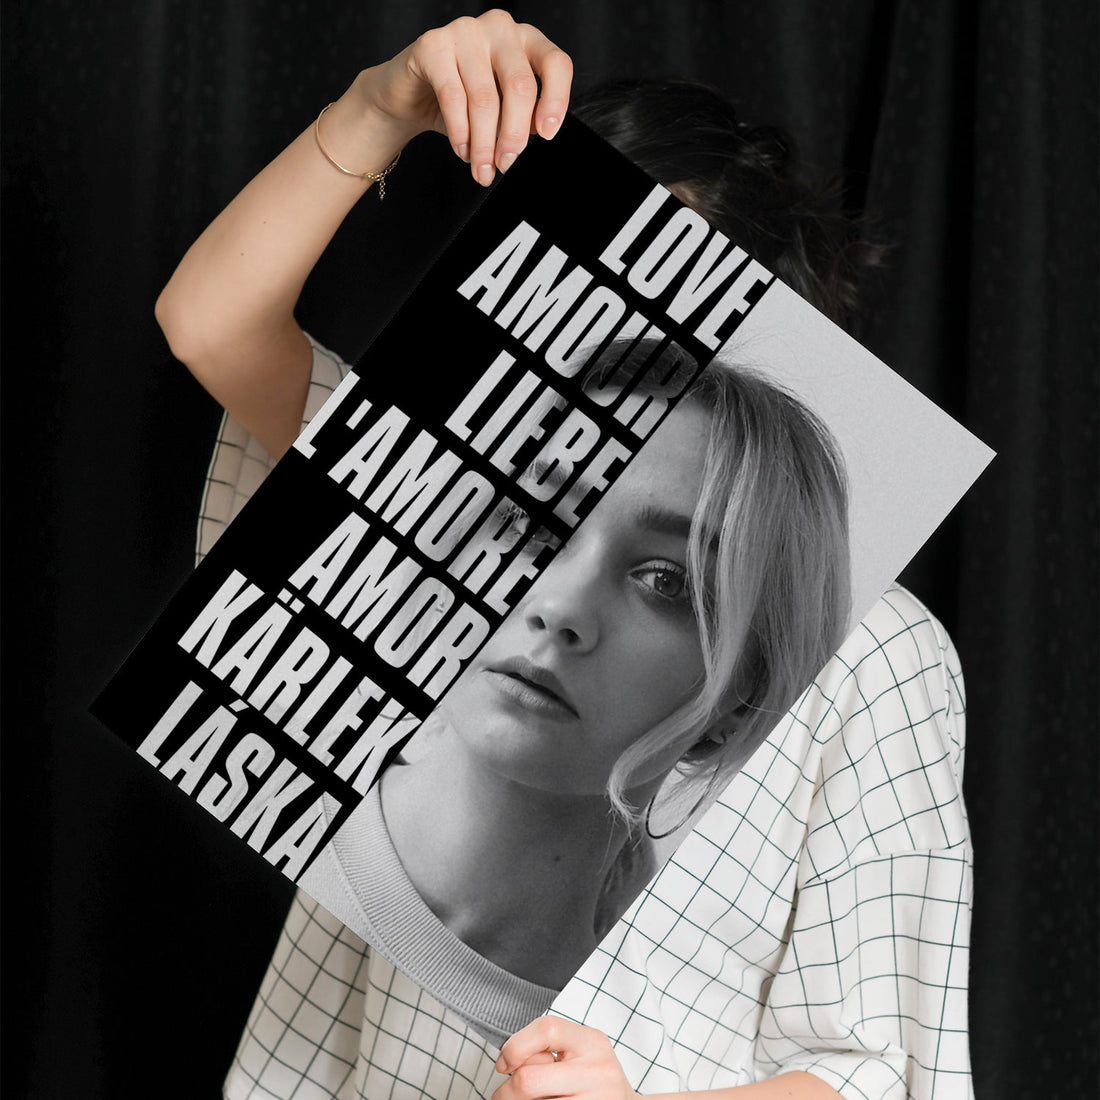 Personalisiertes Poster Liebe Sprachen Mit Foto